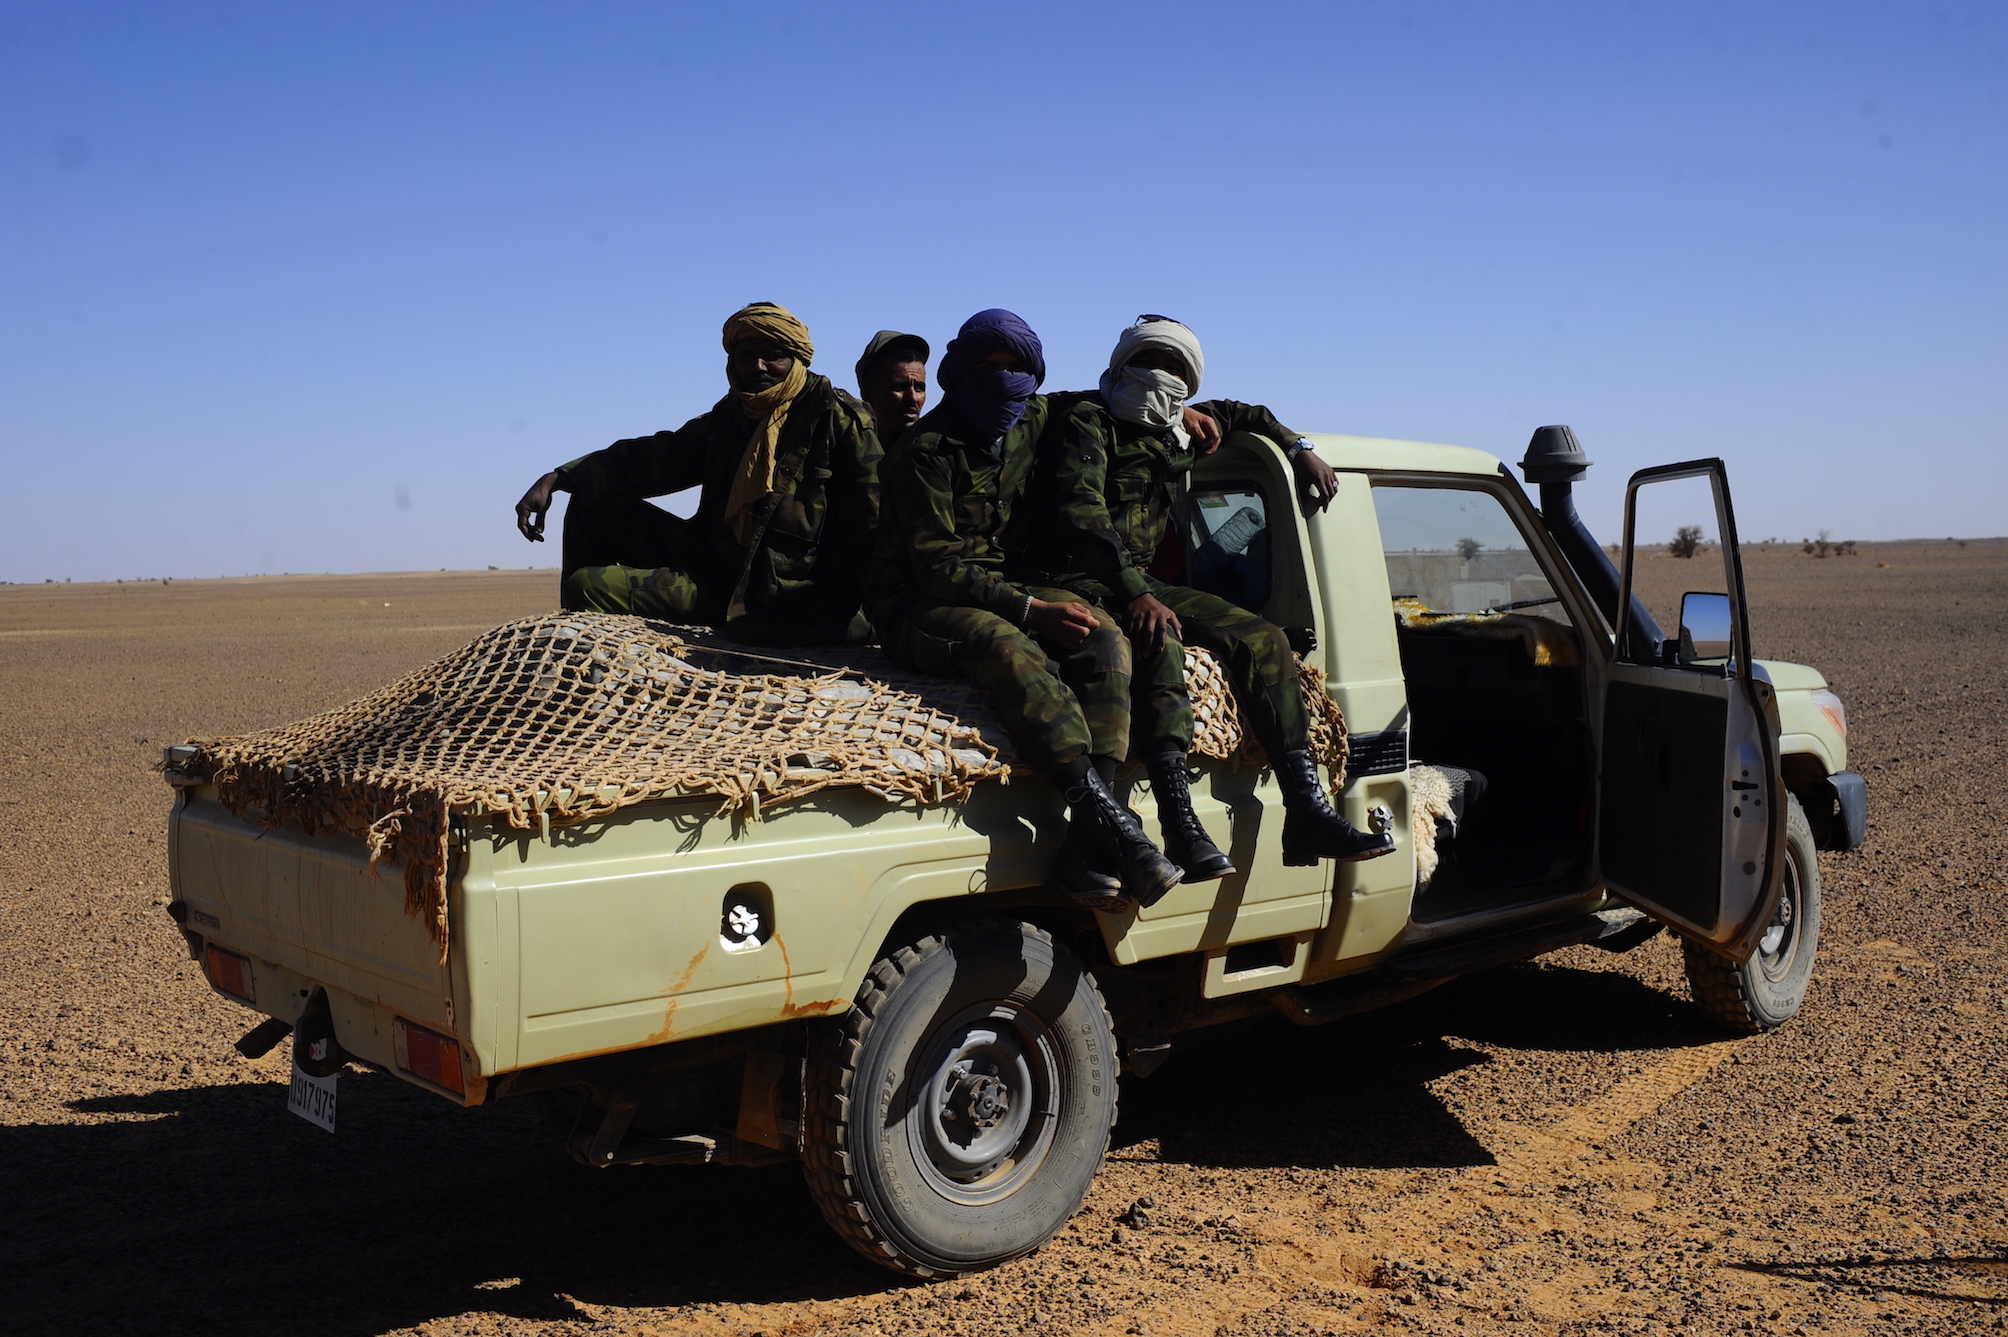 Polisario fighters